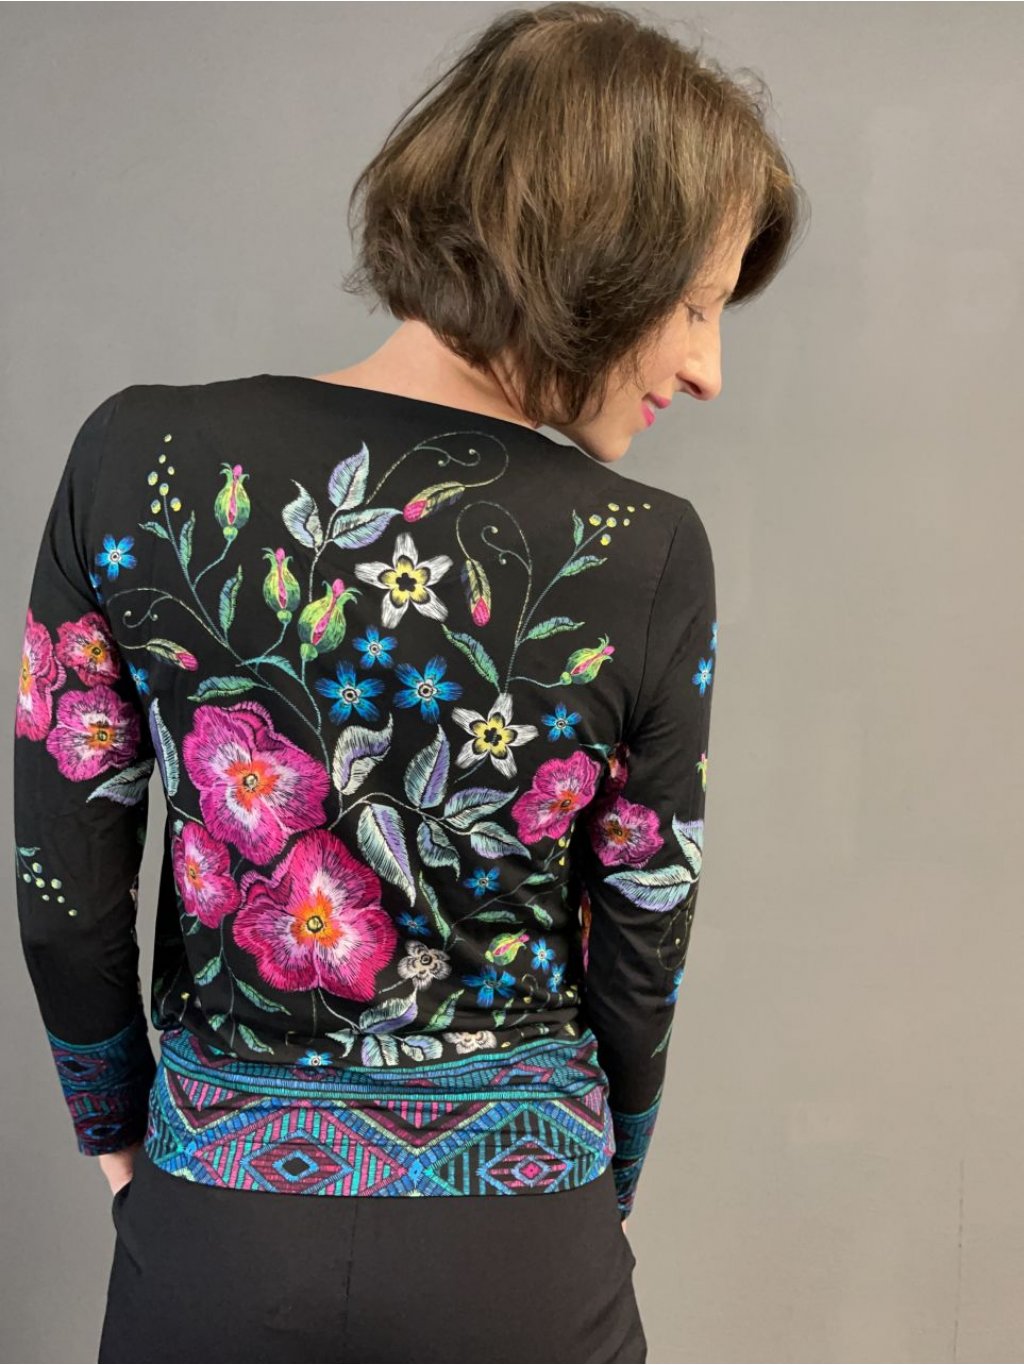 Tričko Top Bis Susan černé s květy malované